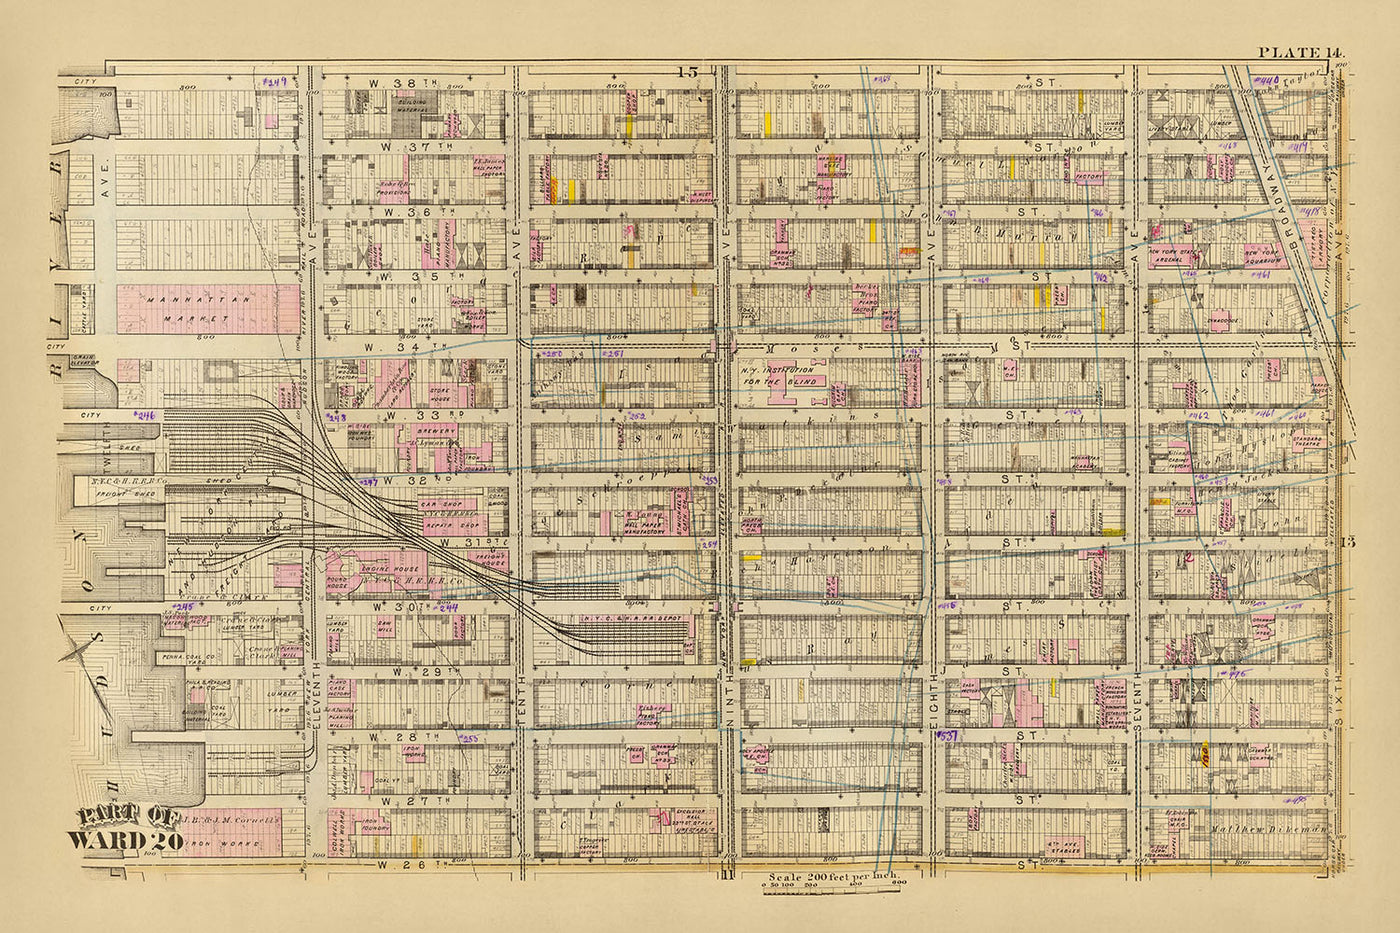 Alte Karte von Ward 20, NYC, 1879: Garment District, New York Central und Hudson River Freight Yard, Manhattan Market, New York Aquarium